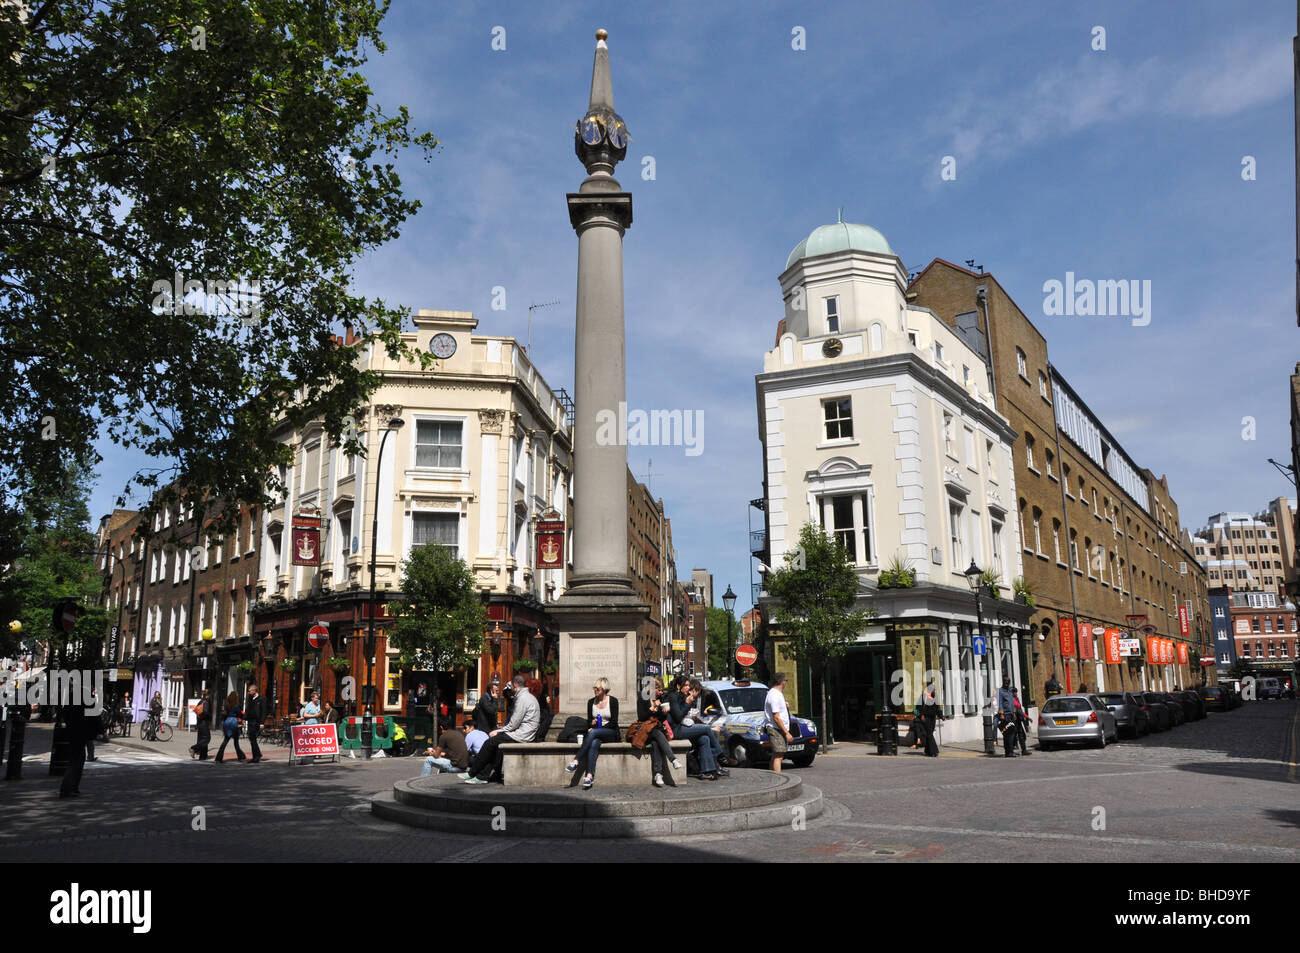 Seven Dials Covent Garden London UK : est une petite mais très bien connu de la West End de Londres Banque D'Images